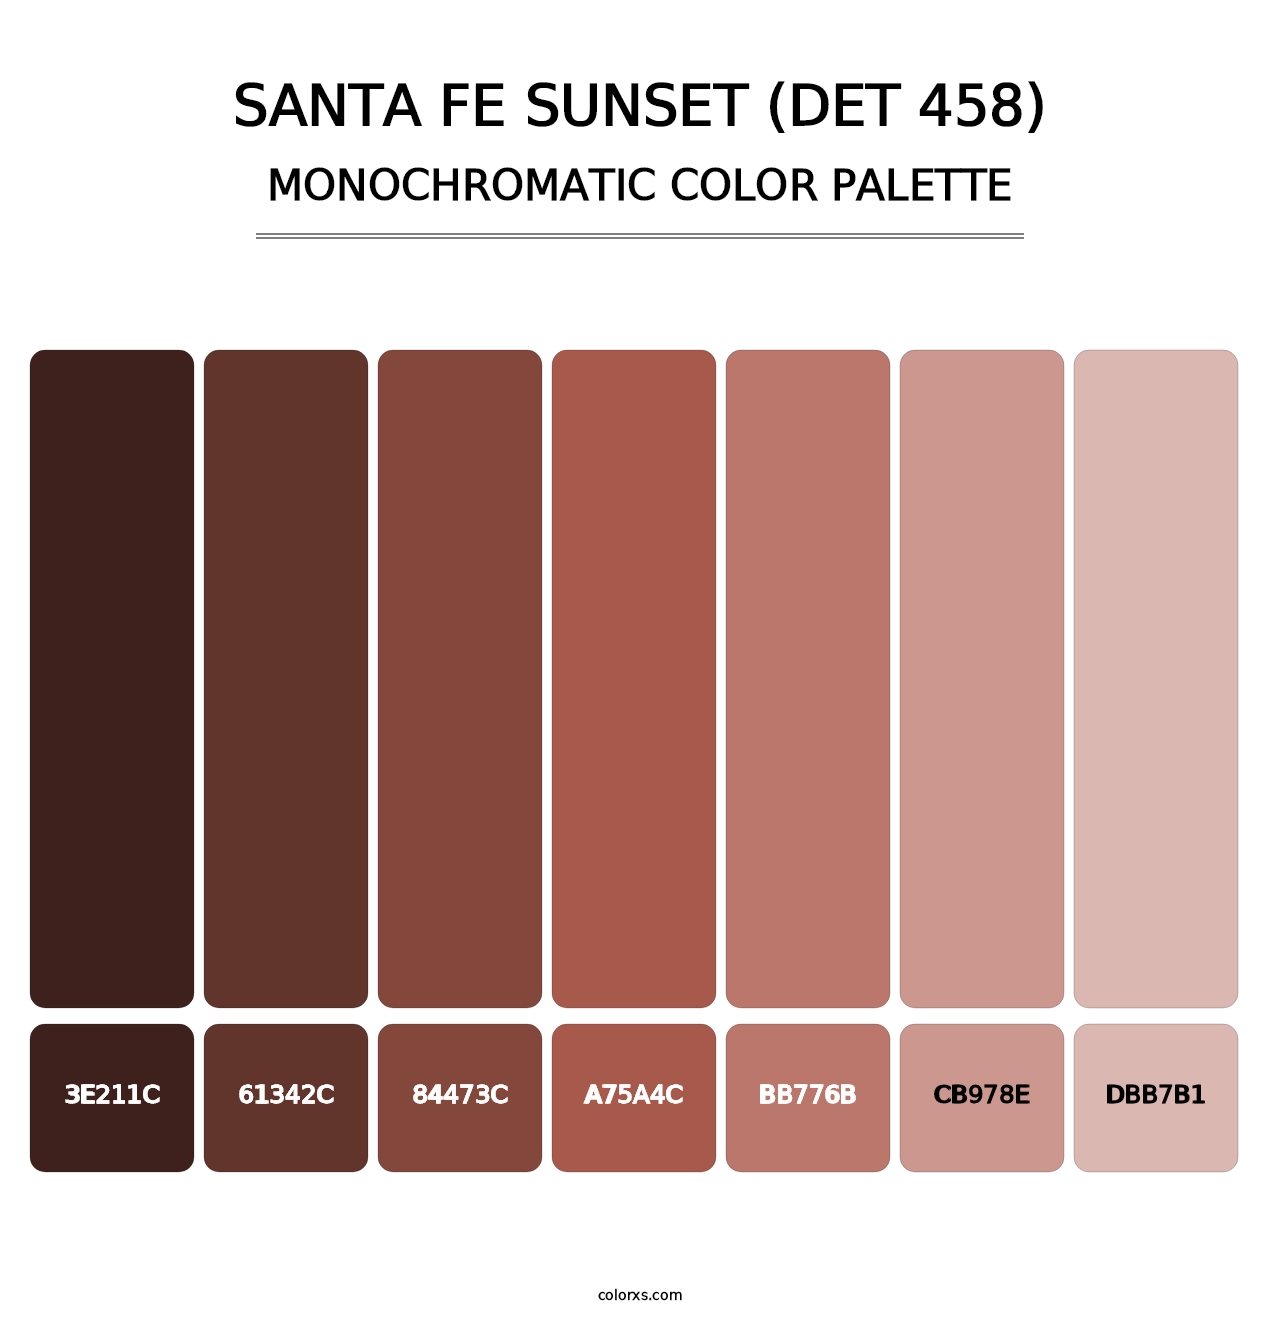 Santa Fe Sunset (DET 458) - Monochromatic Color Palette